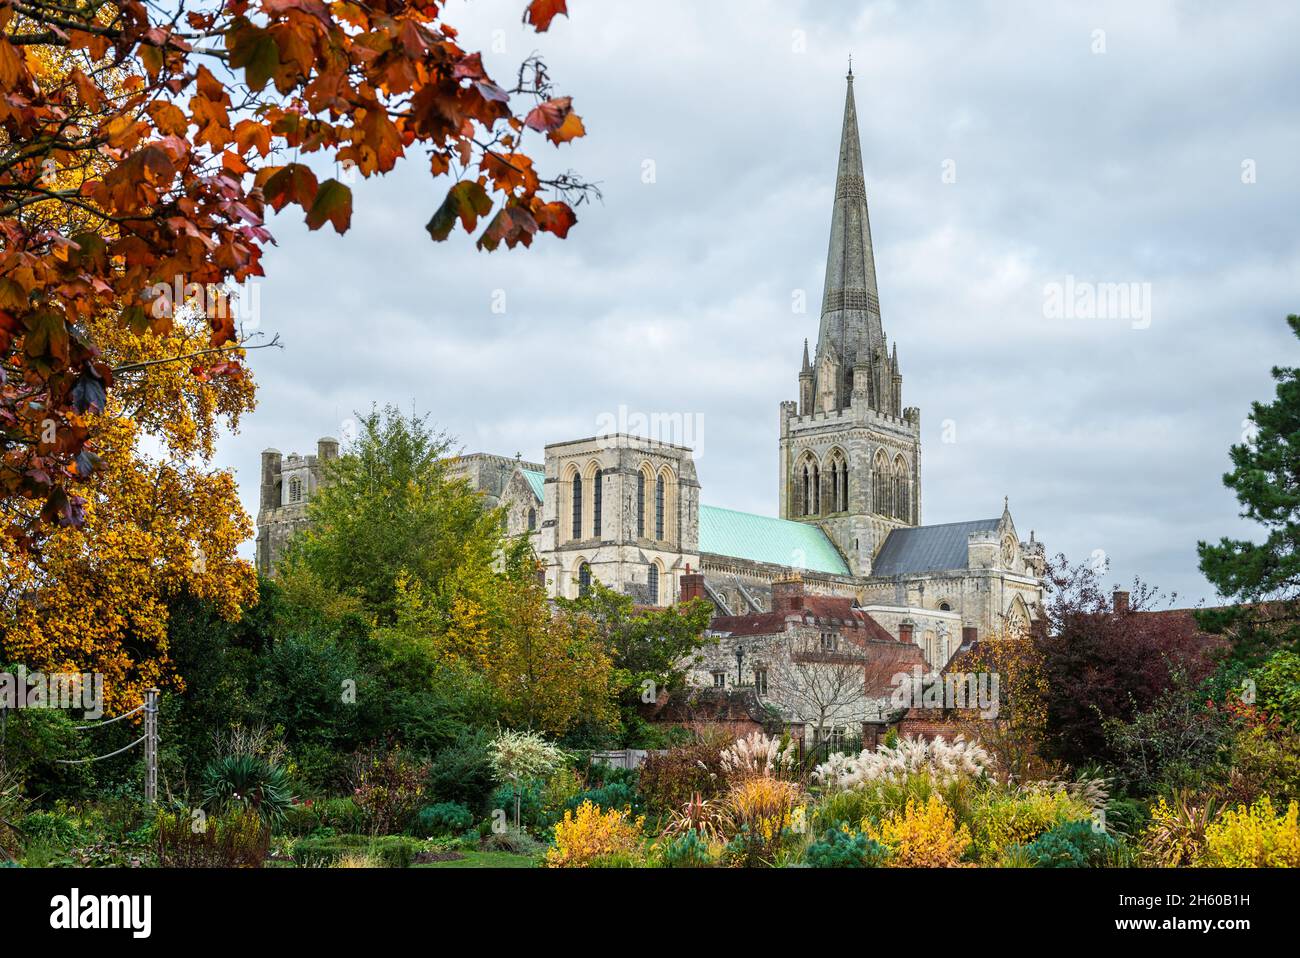 Vue sur la cathédrale historique de Chichester avec les couleurs d'automne et les arbres lors d'une journée de ciel dans la ville de Chichester, West Sussex, Angleterre, Royaume-Uni. Banque D'Images